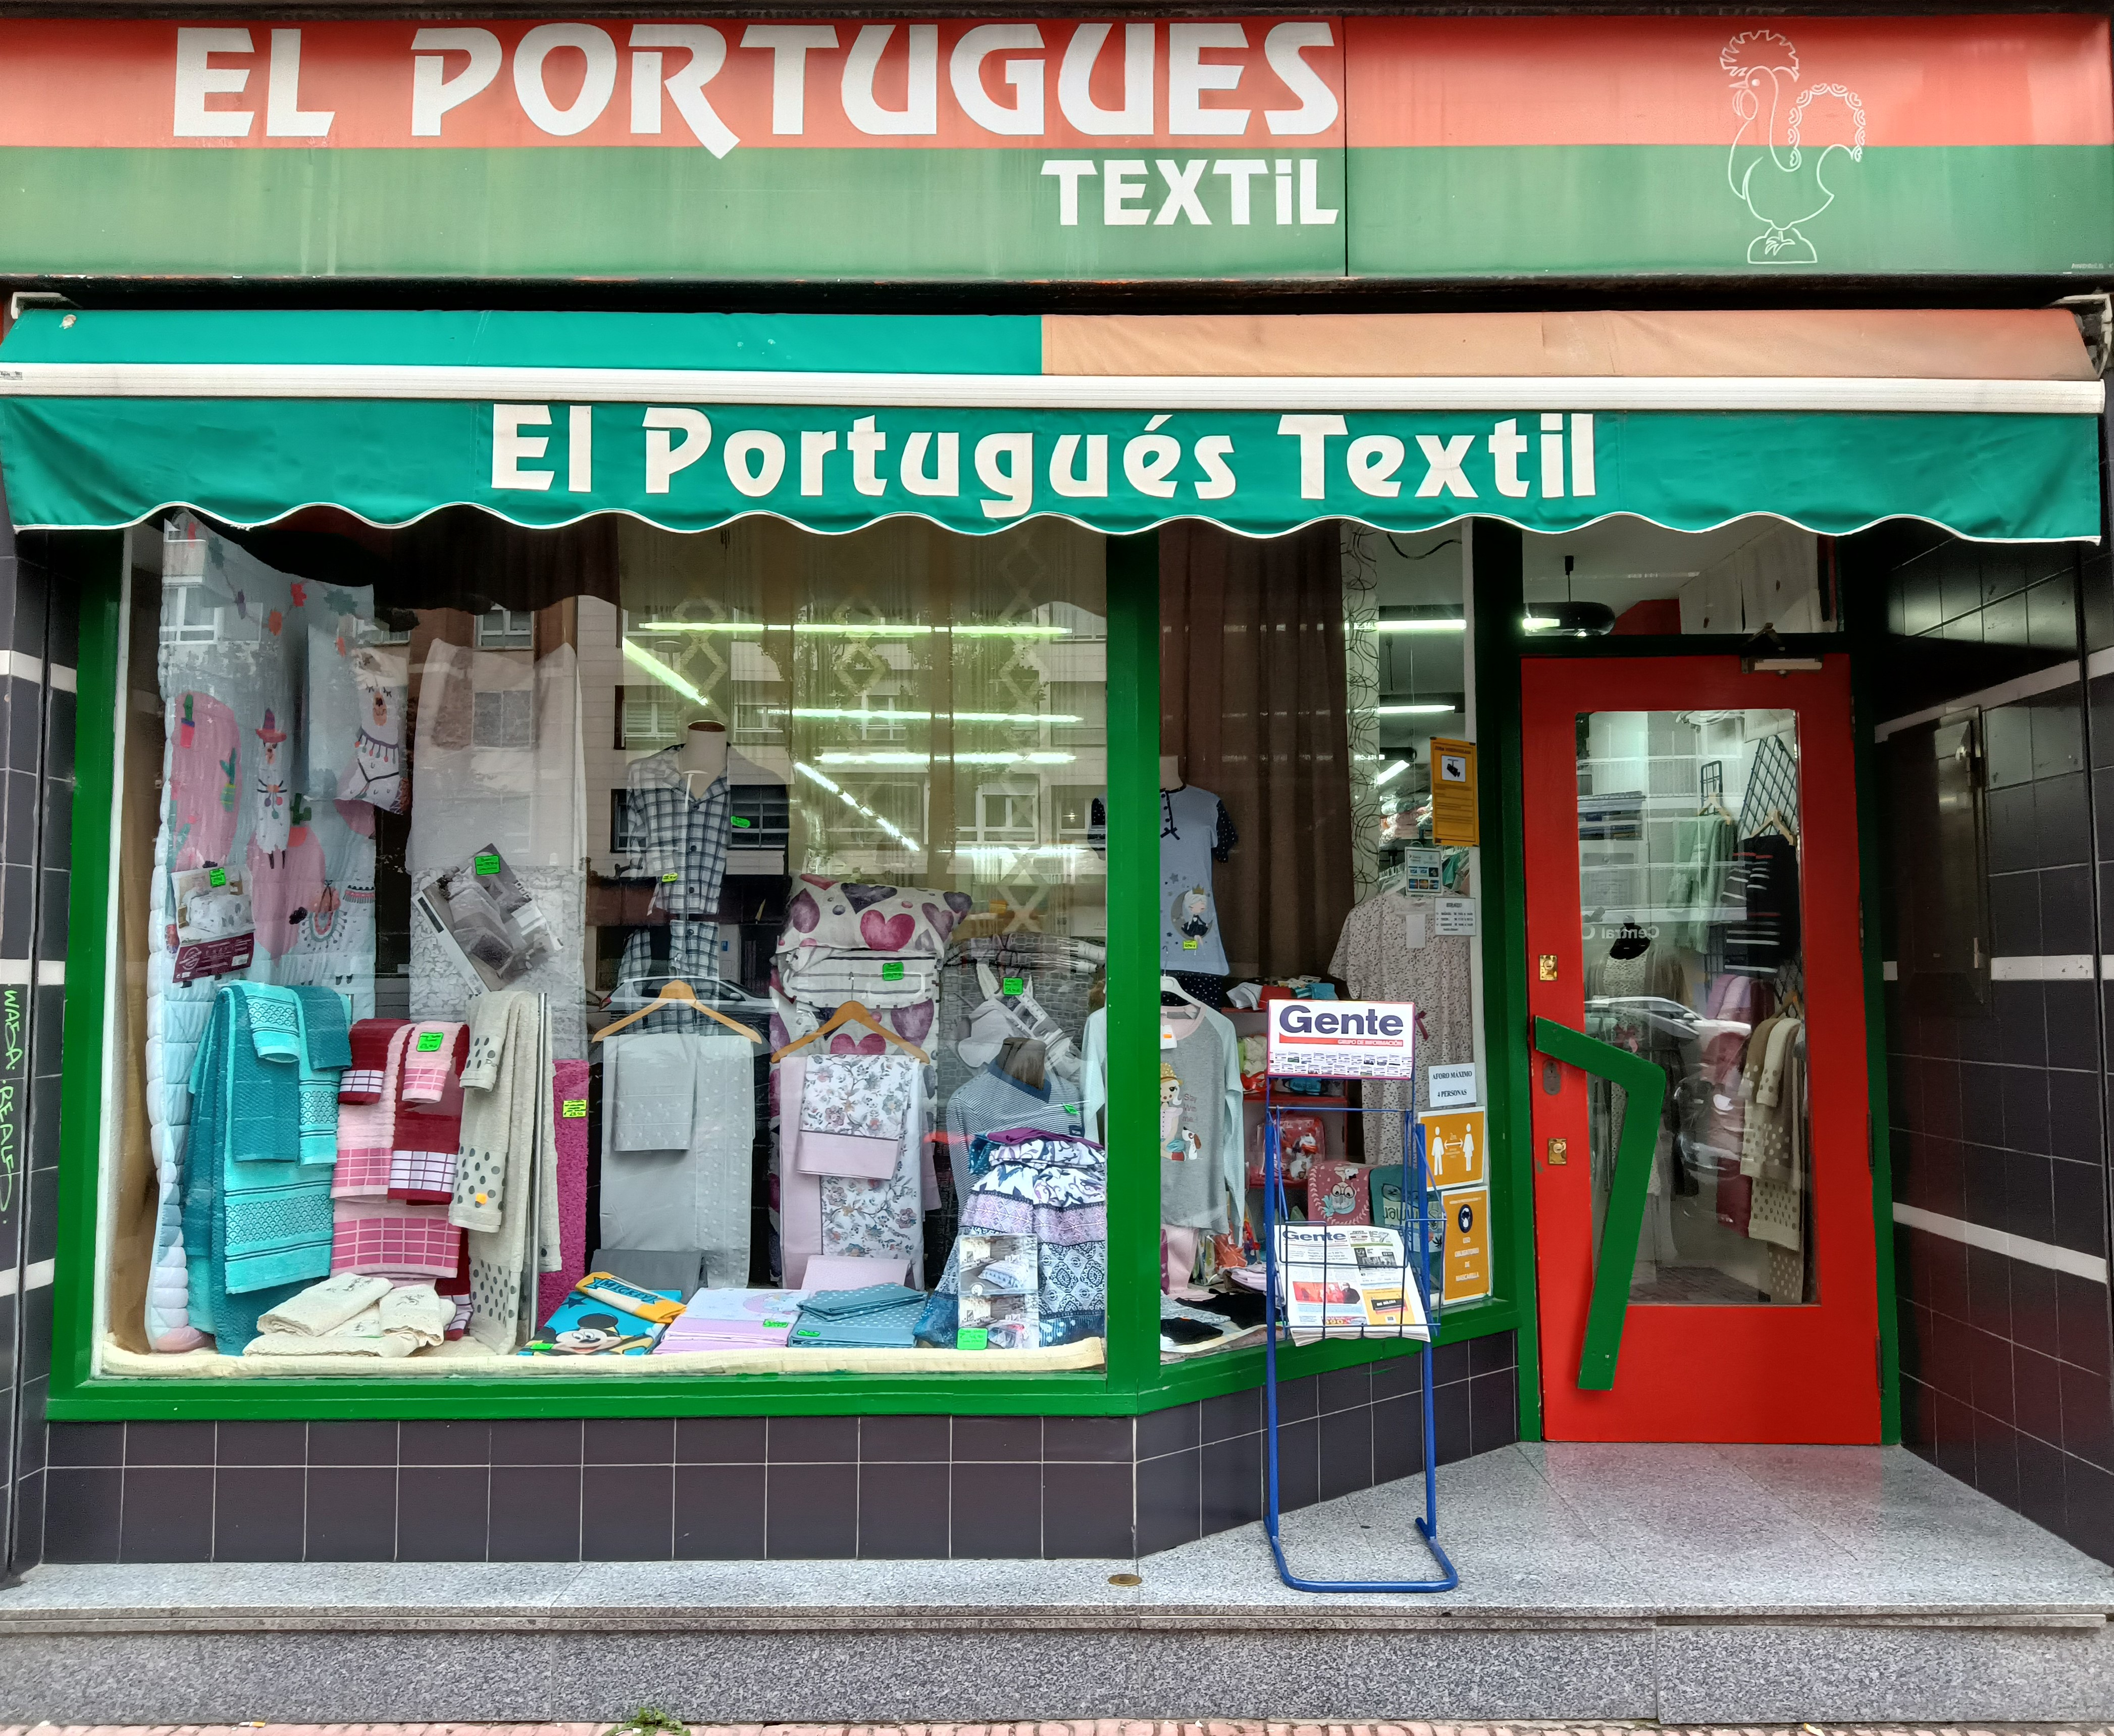 El Portugues Textil